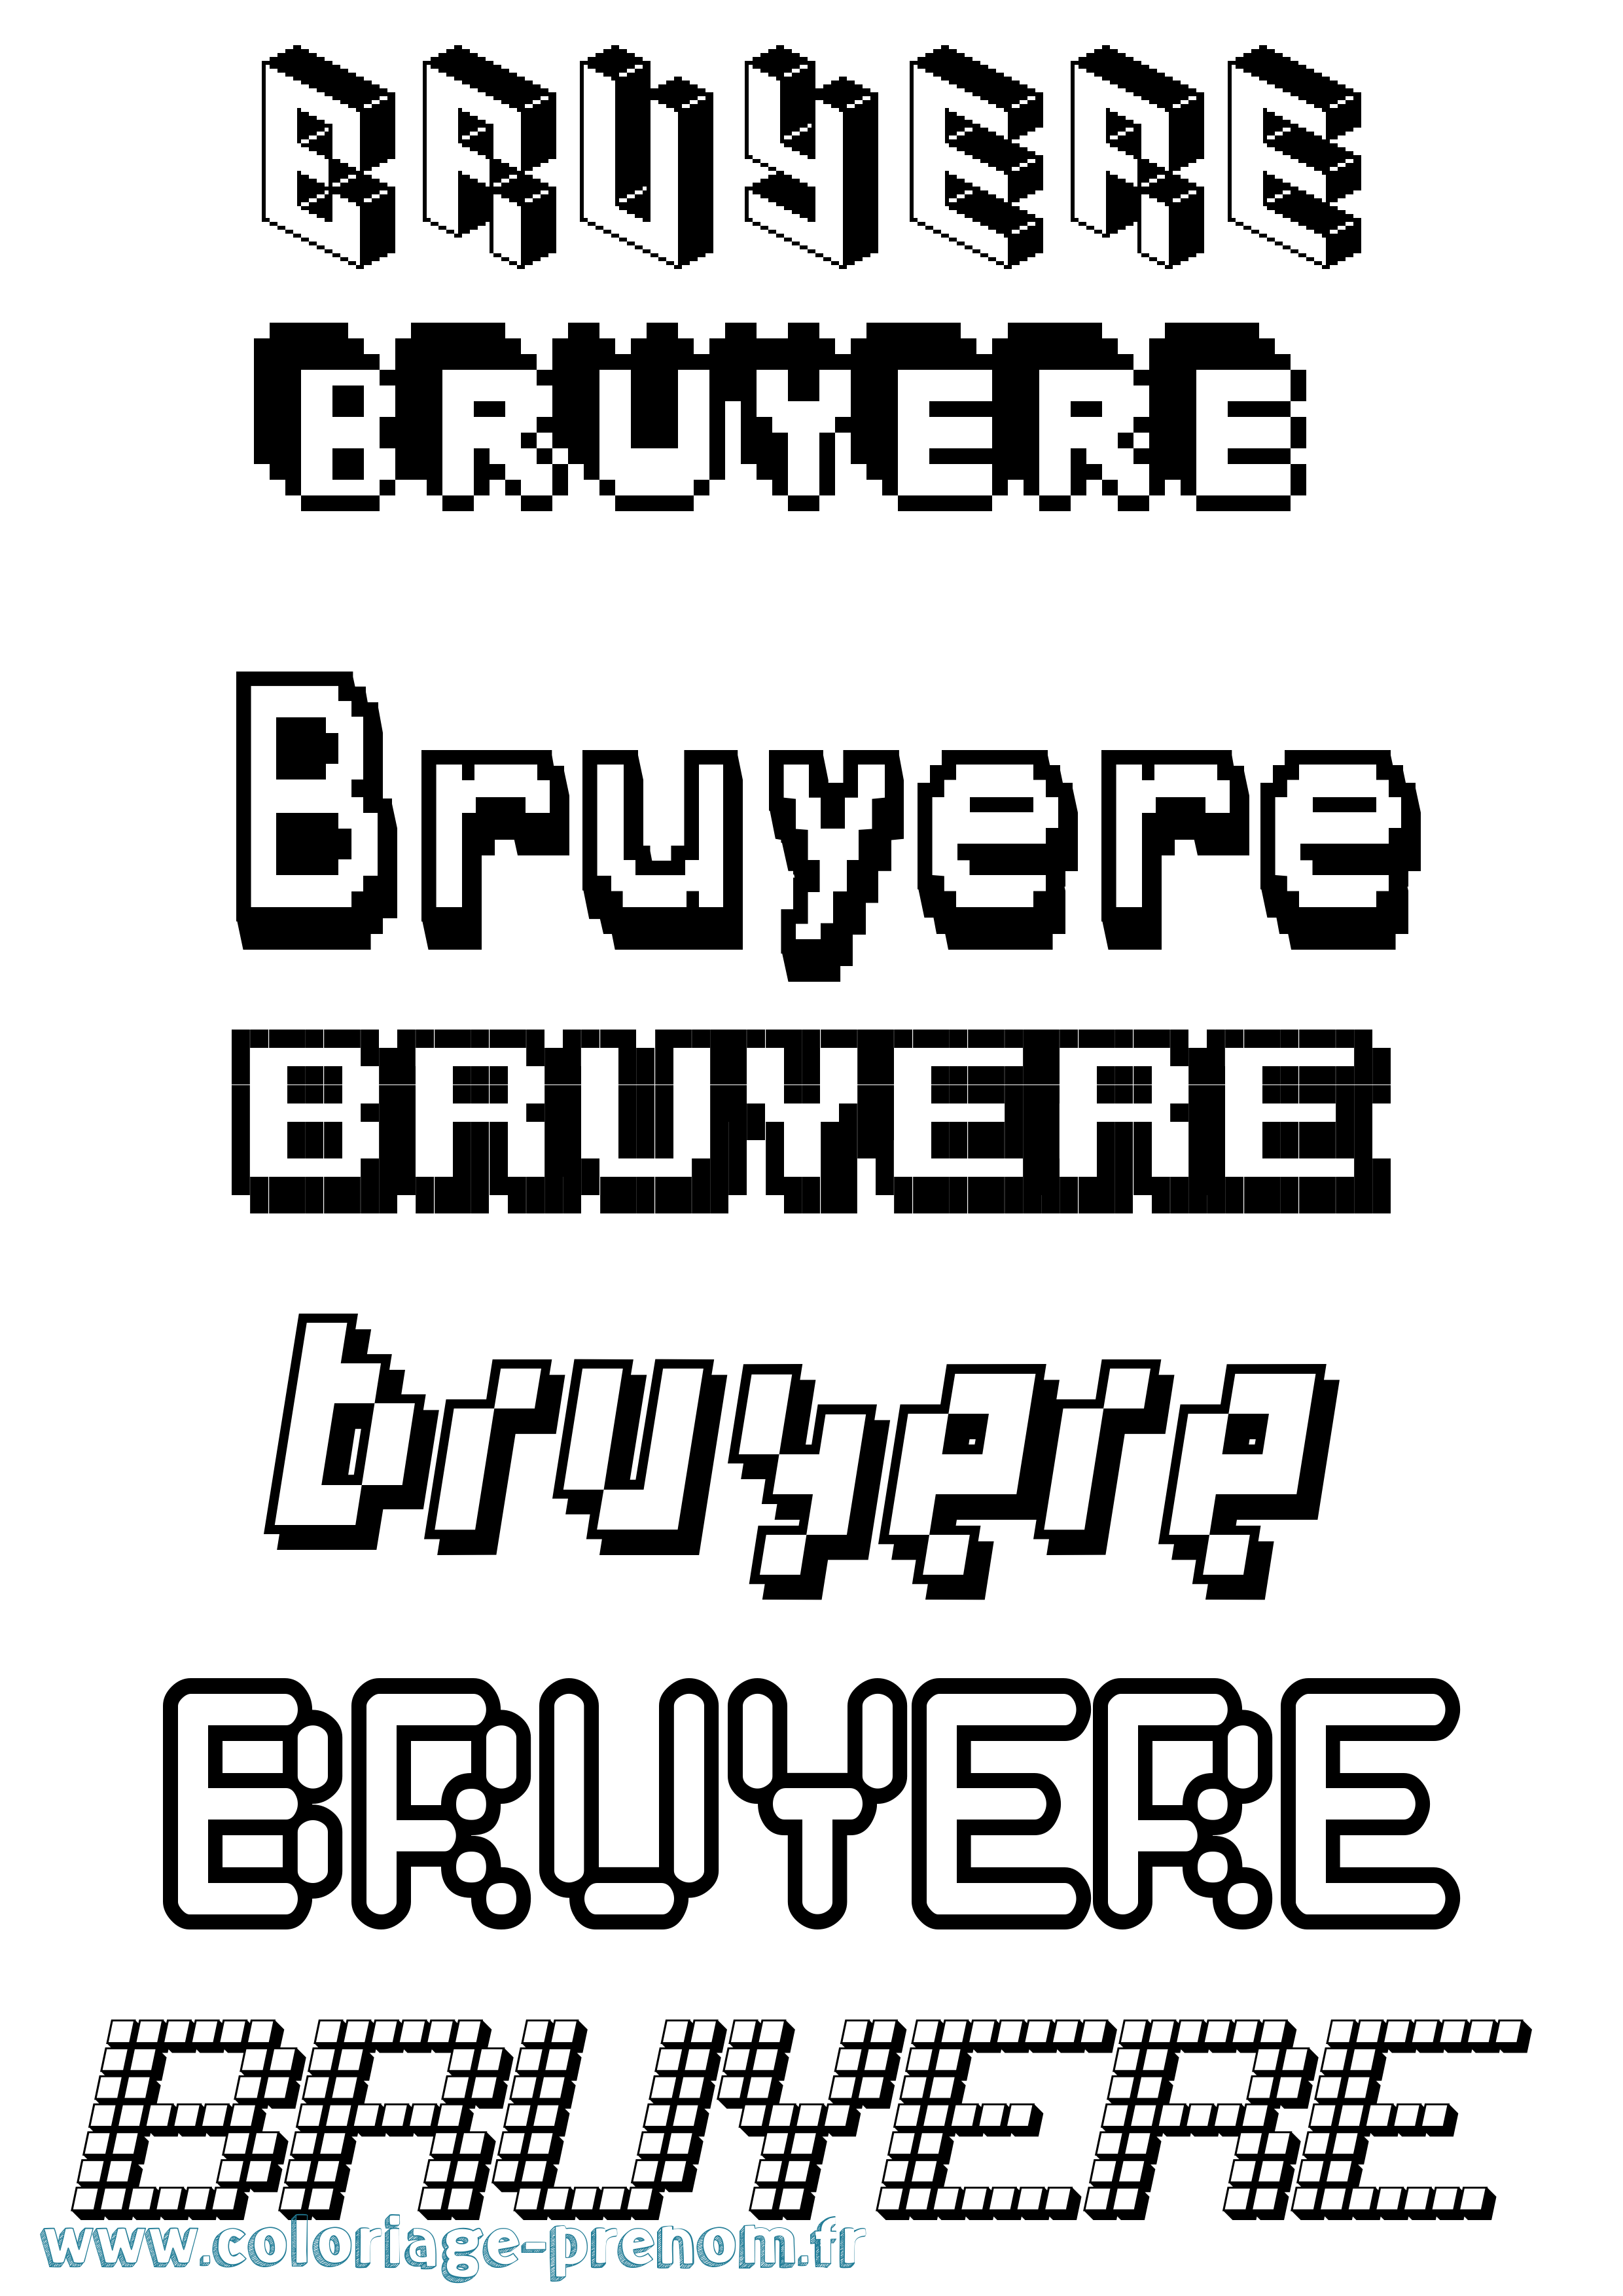 Coloriage prénom Bruyere Pixel